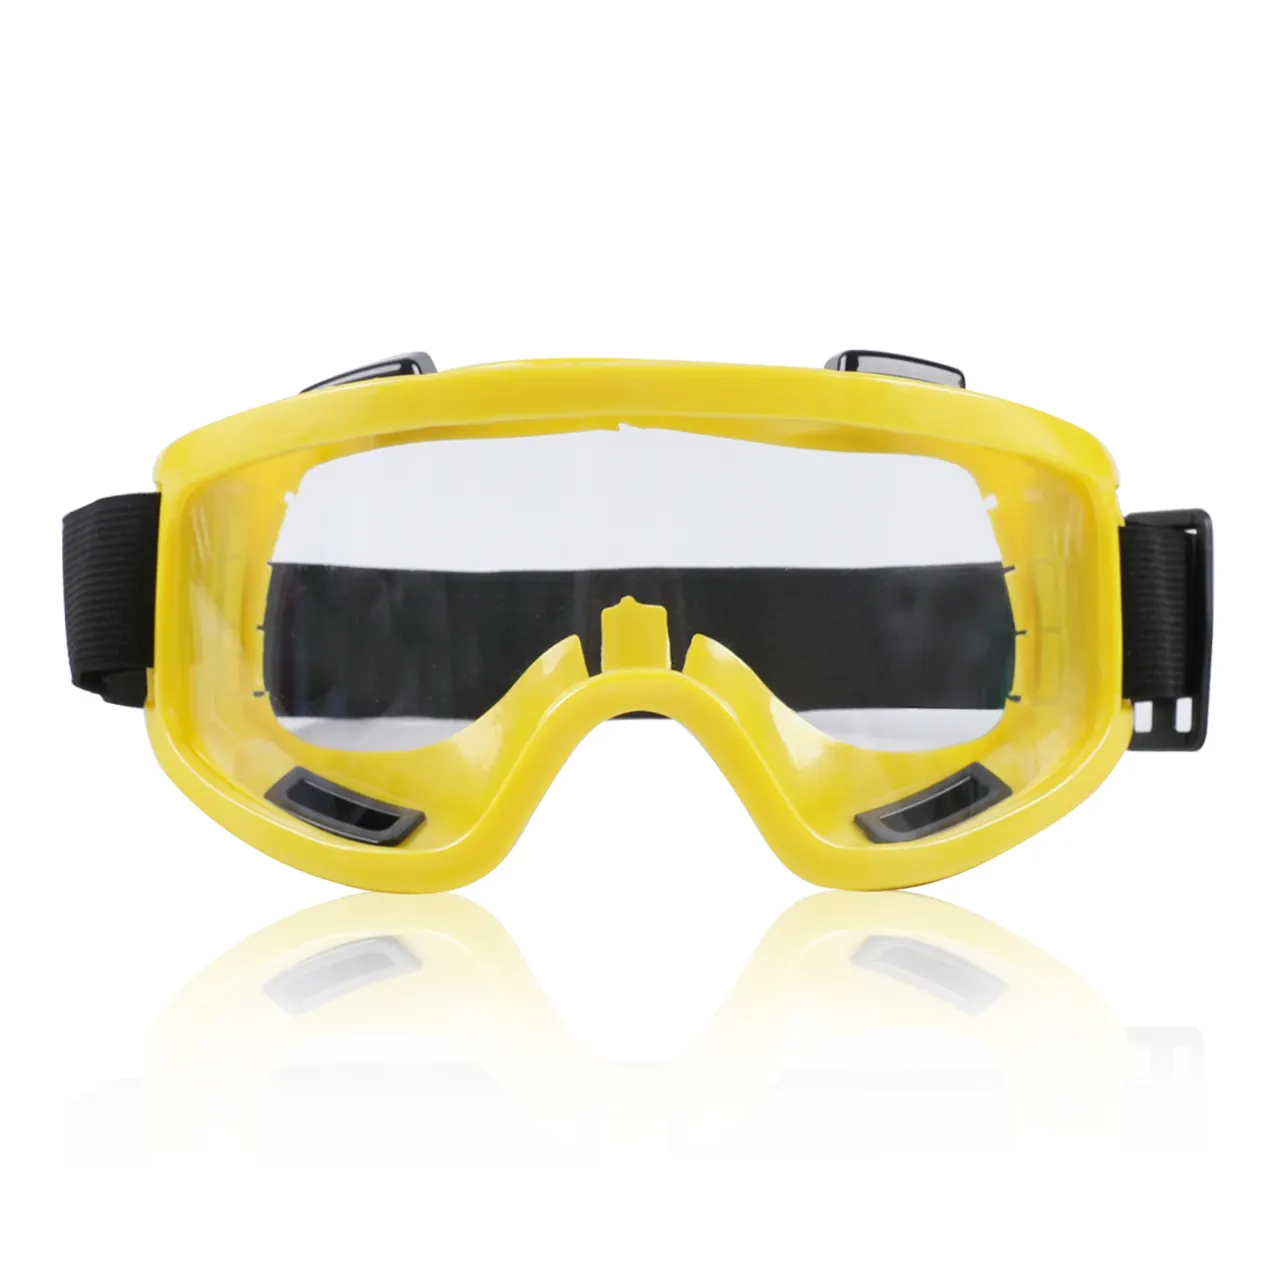 Óculos de sol personalizado, novos óculos de sol personalizados de plástico amarelo de alta qualidade com faixa elástica